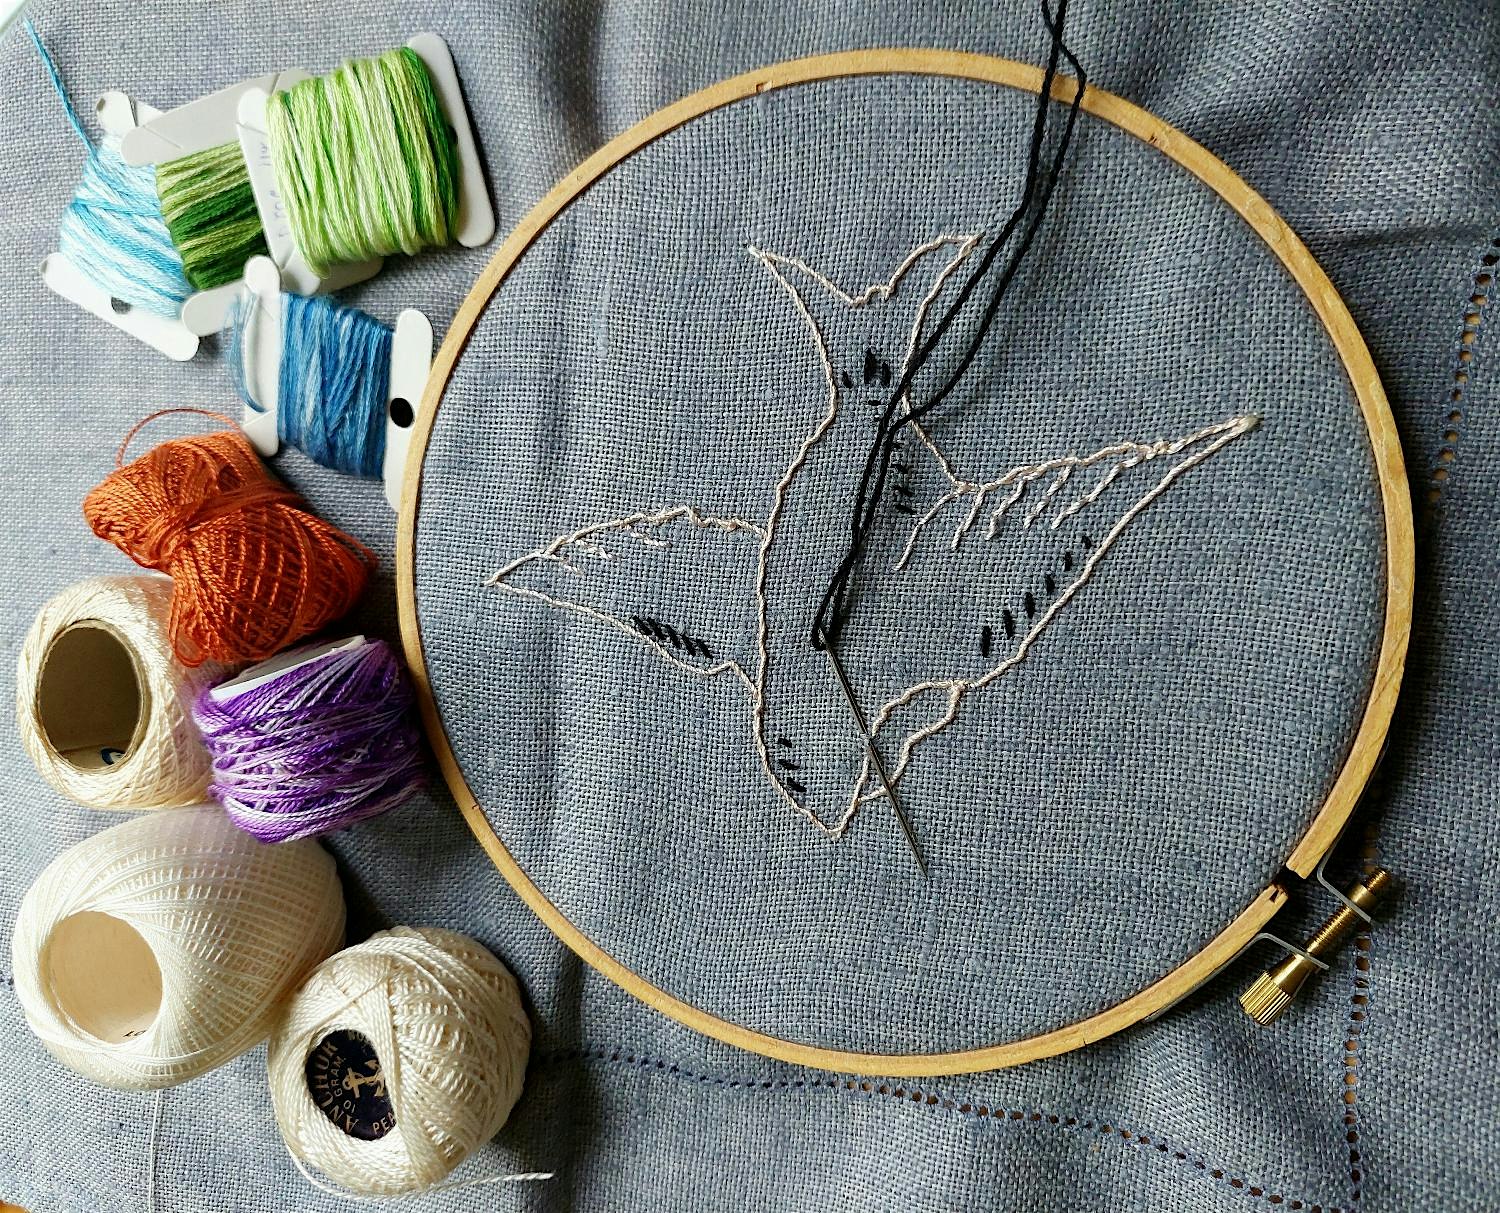 Embroidery Hoop workshop